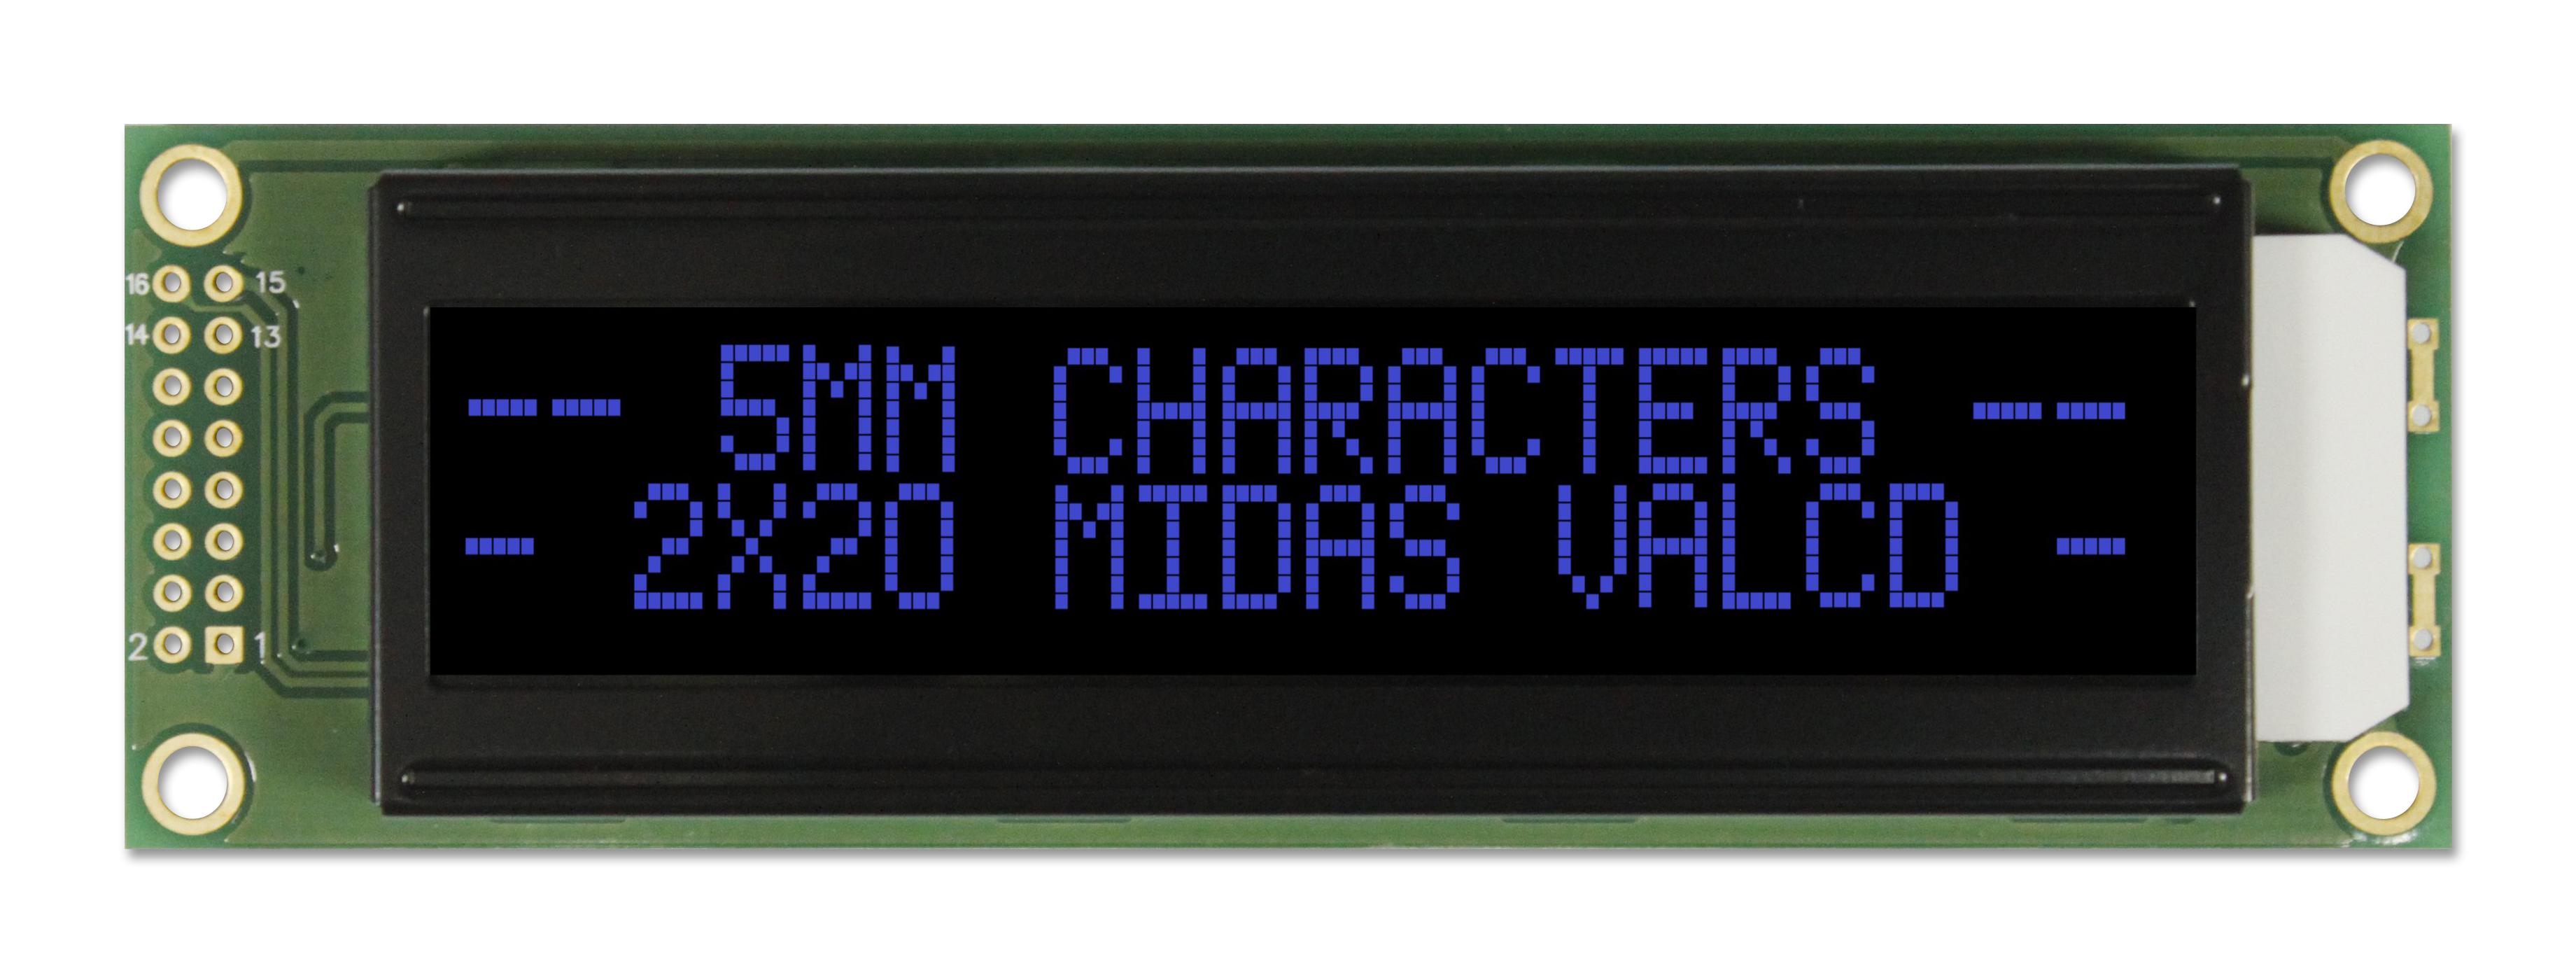 MC22005A12W-VNMLB LCD, ALPHA-NUM, 20 X 2, BLUE MIDAS